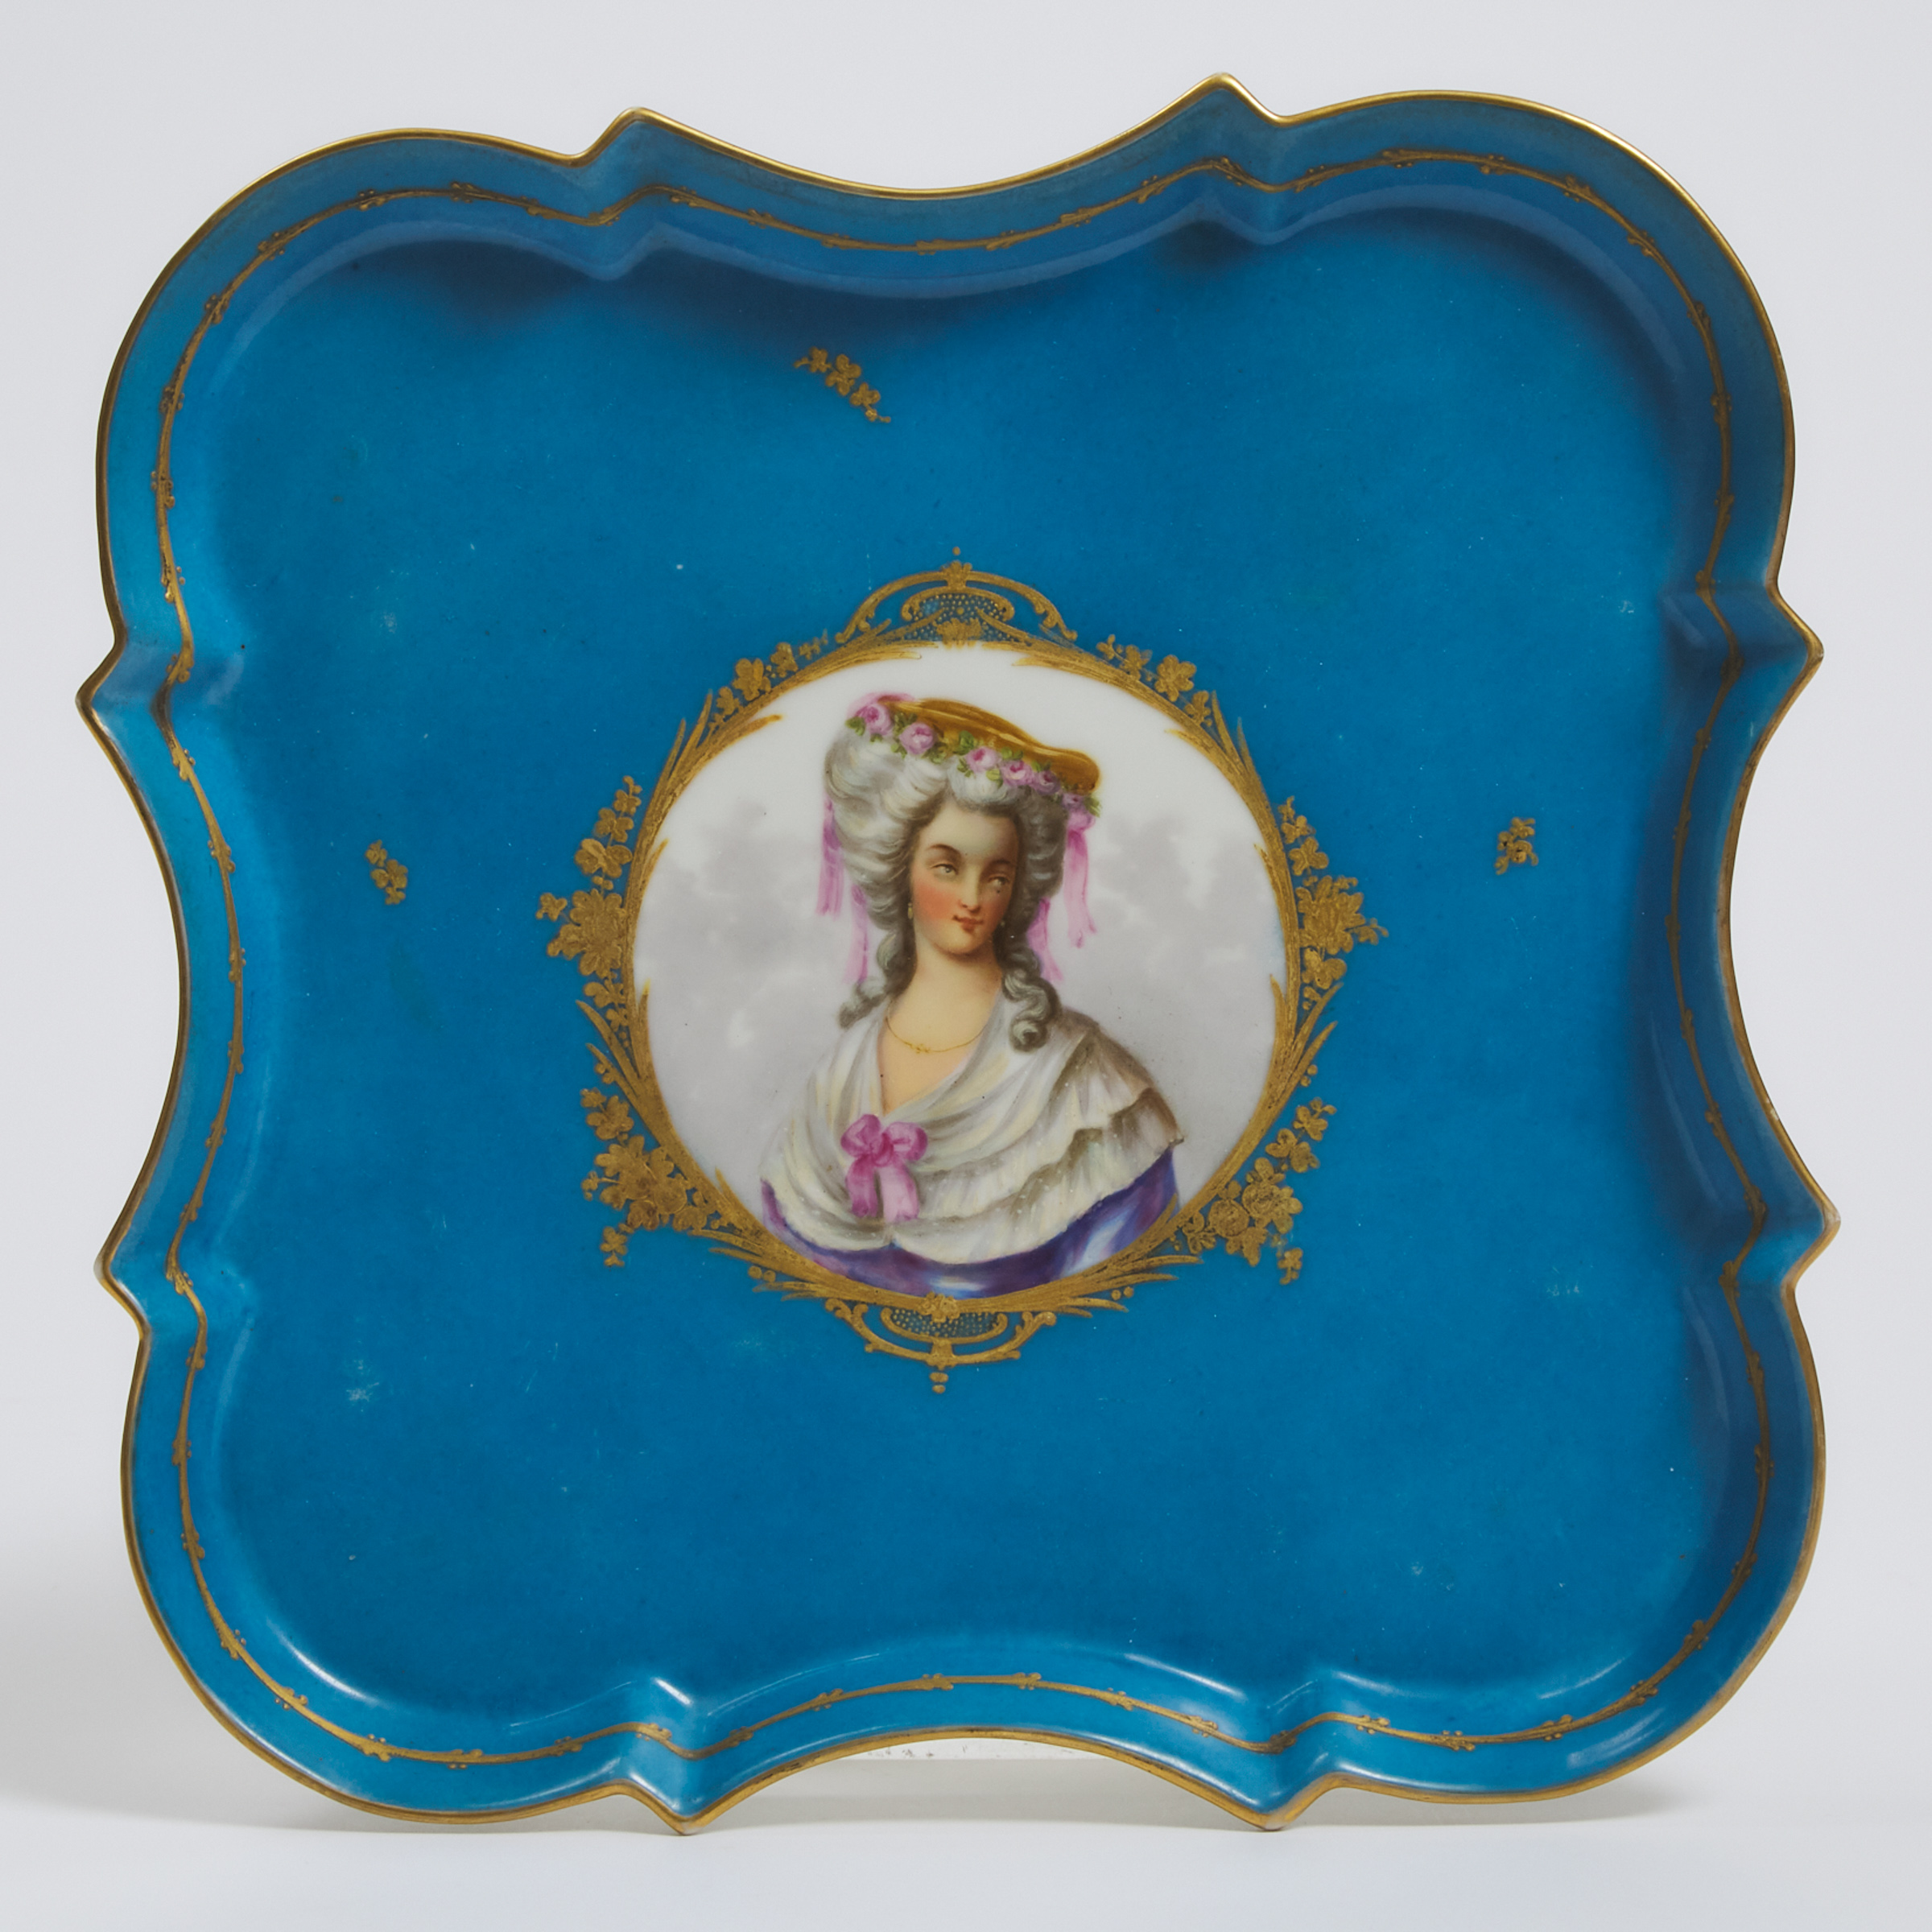 'Sèvres' Bleu Céleste Ground 'Princesse de Lamballe' Portrait Tray, late 19th century